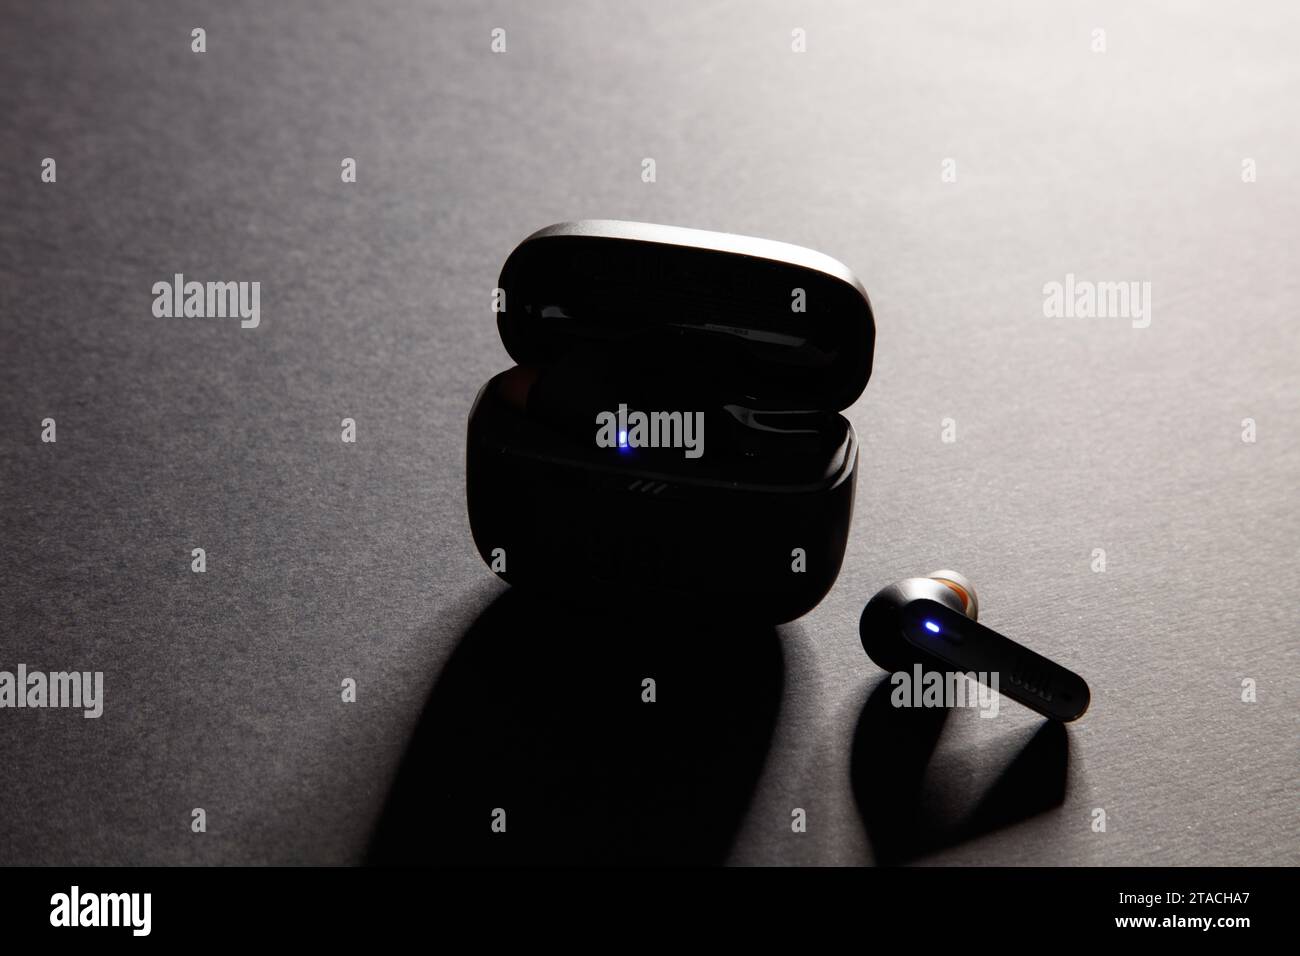 una ripresa in studio di un paio di auricolari bluetooth wireless jbl neri, su uno sfondo nero incredibilmente illuminato Foto Stock